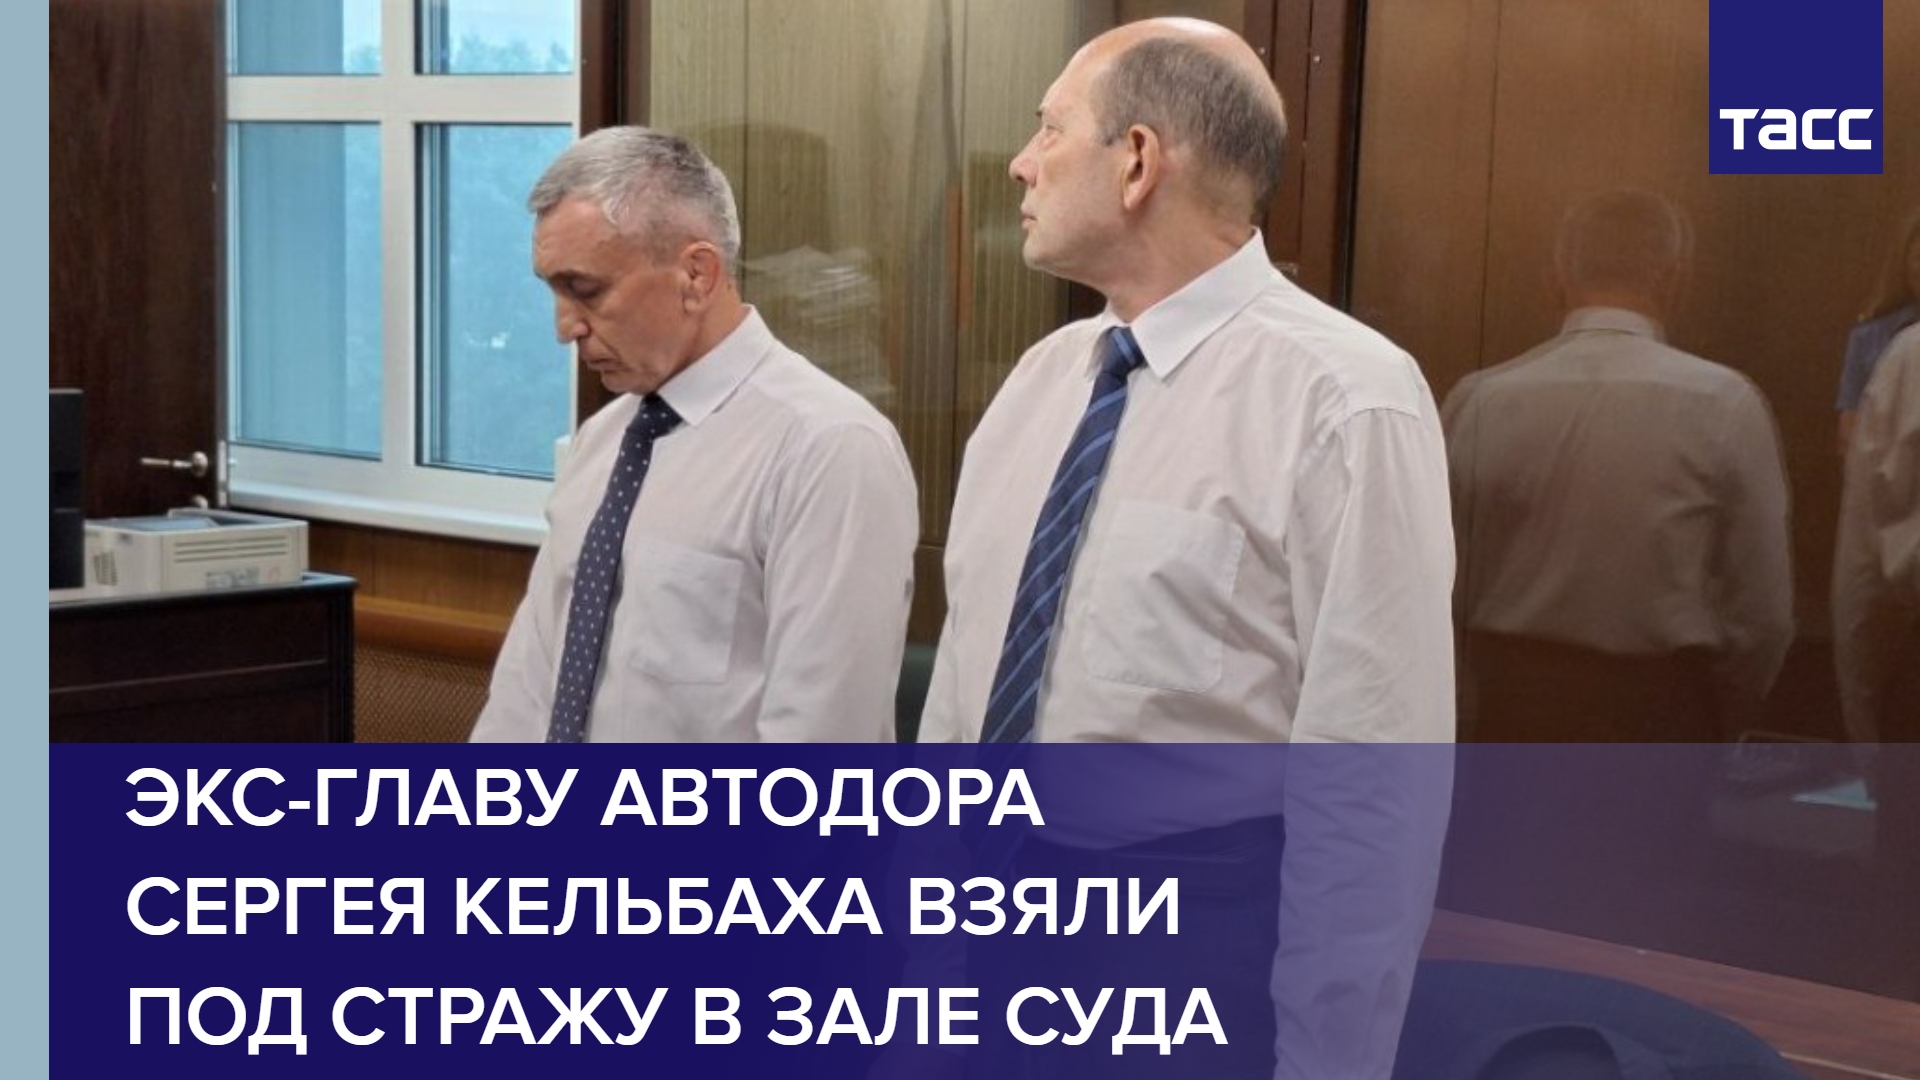 Экс-главу Автодора Сергея Кельбаха взяли под стражу в зале суда